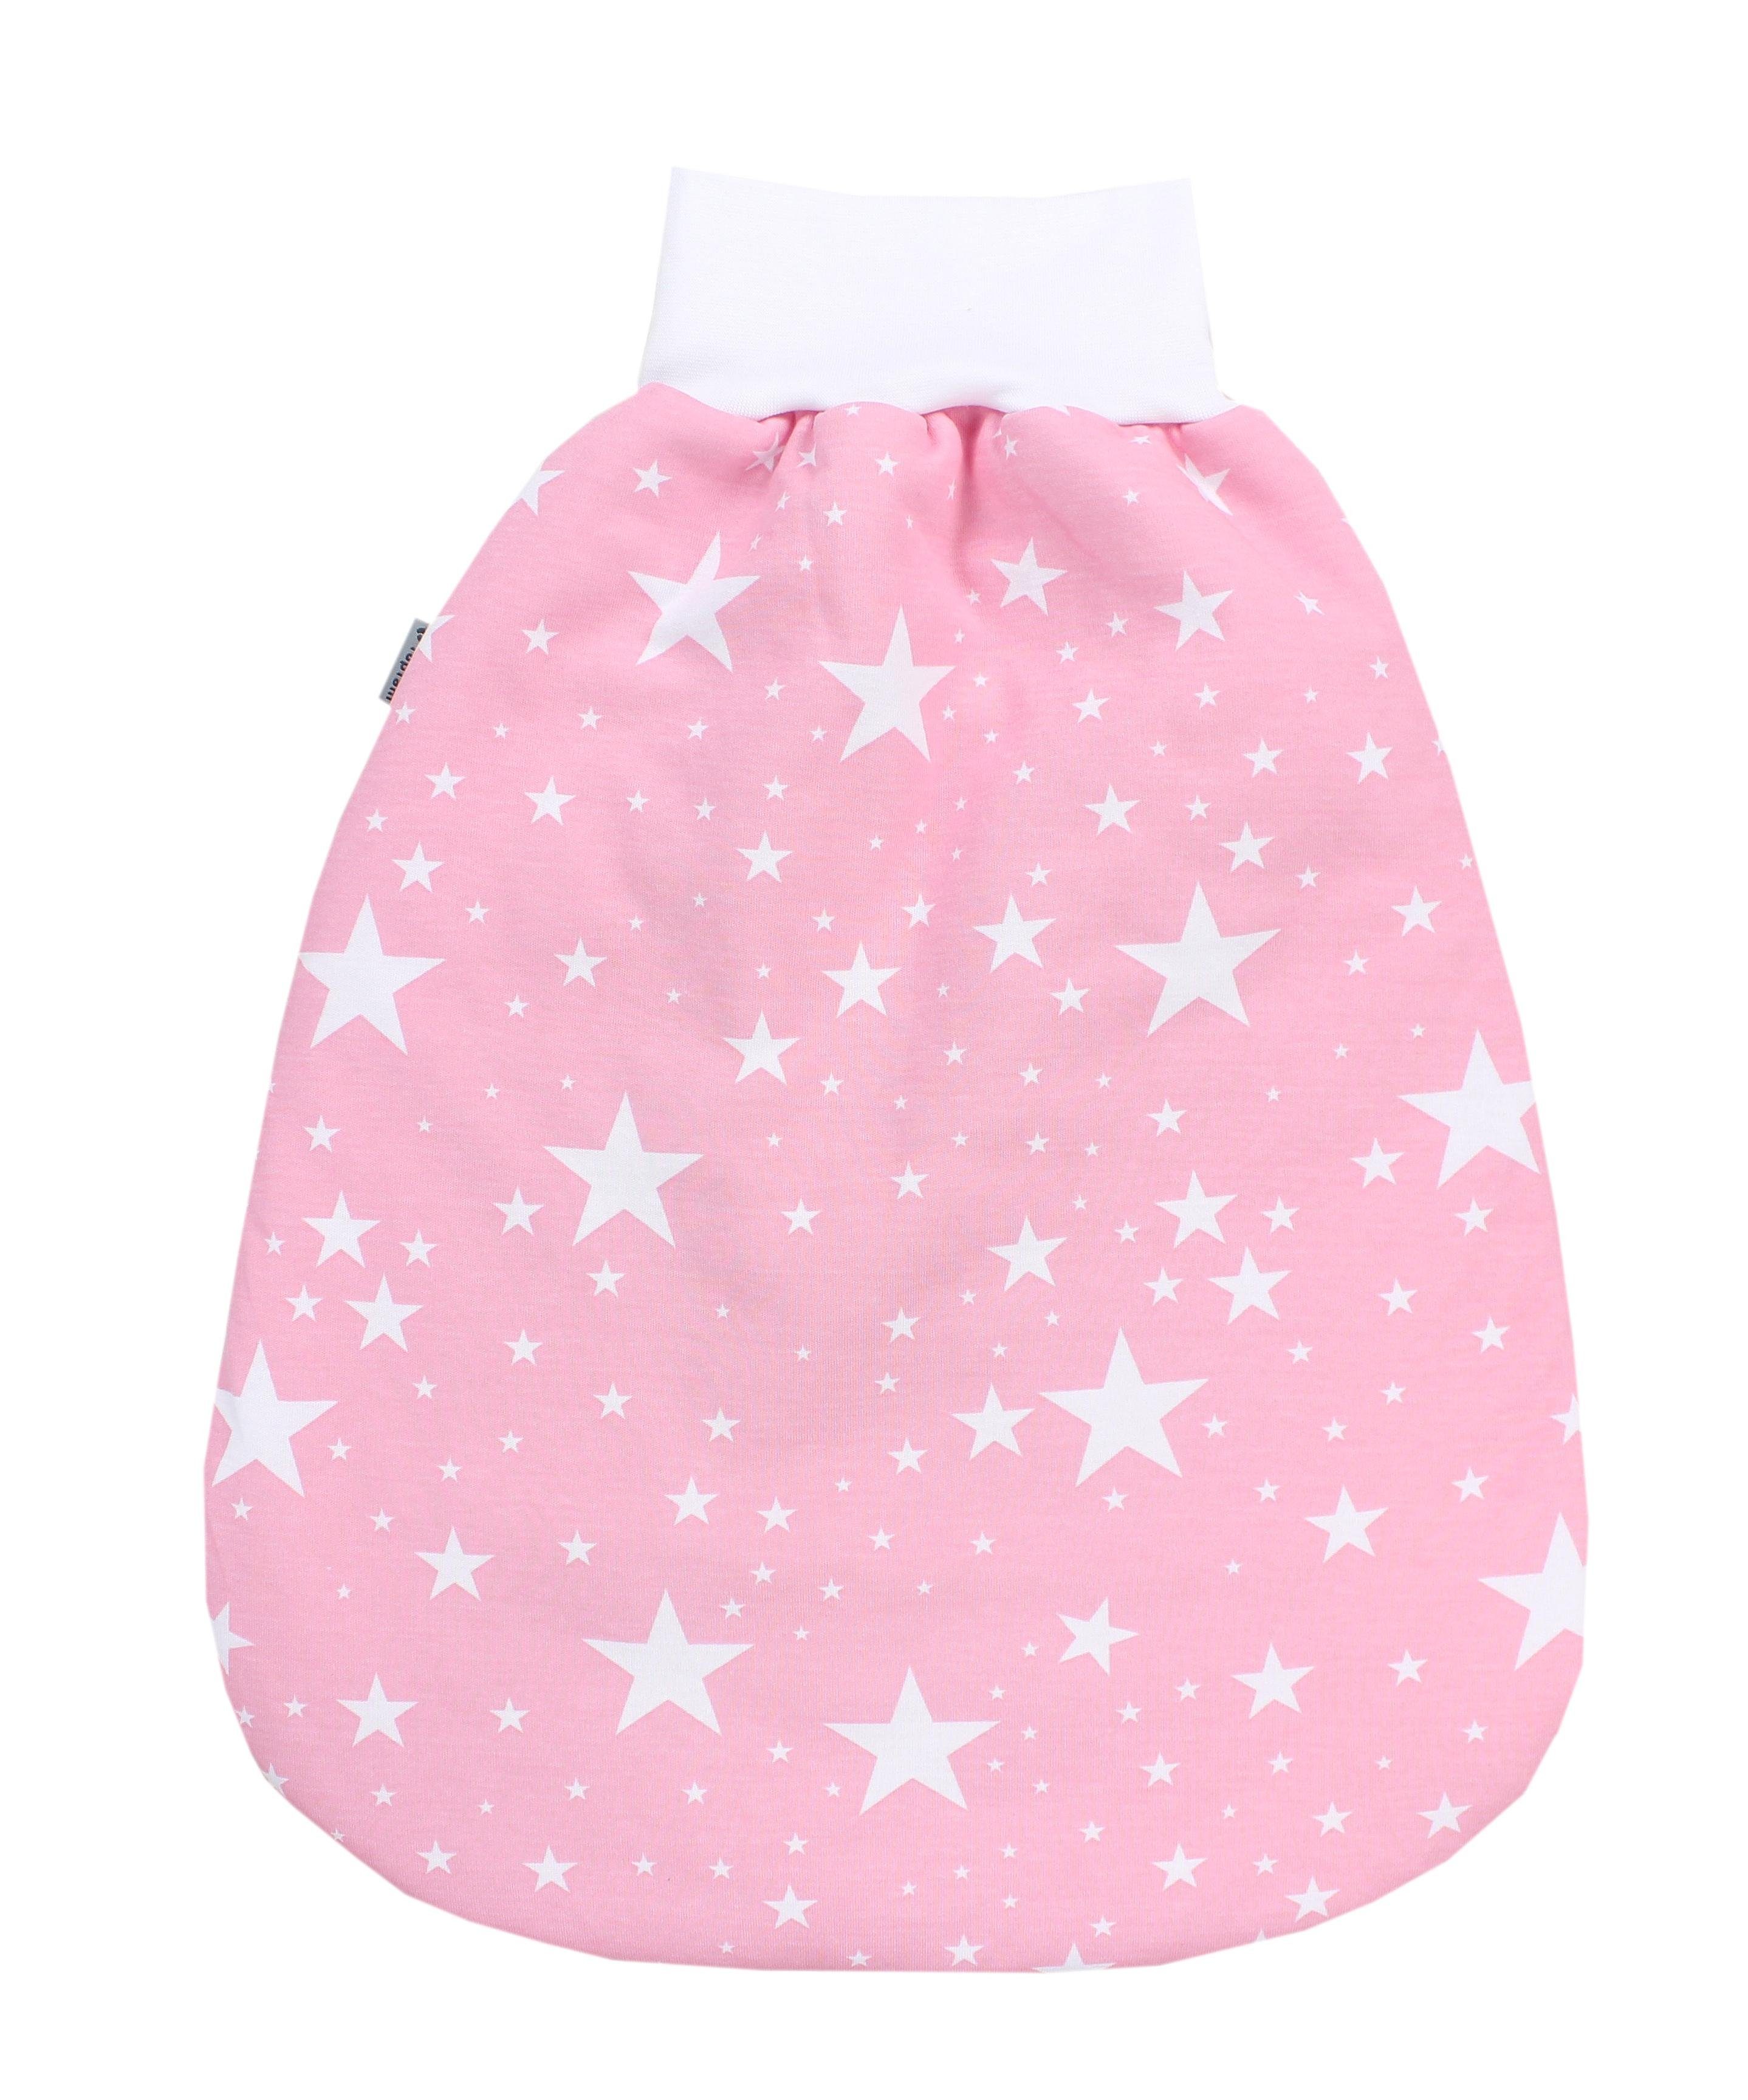 TupTam Babyschlafsack TupTam Baby Unisex Strampelsack mit breitem Bund Wattiert Weiße Sterne / Rosa